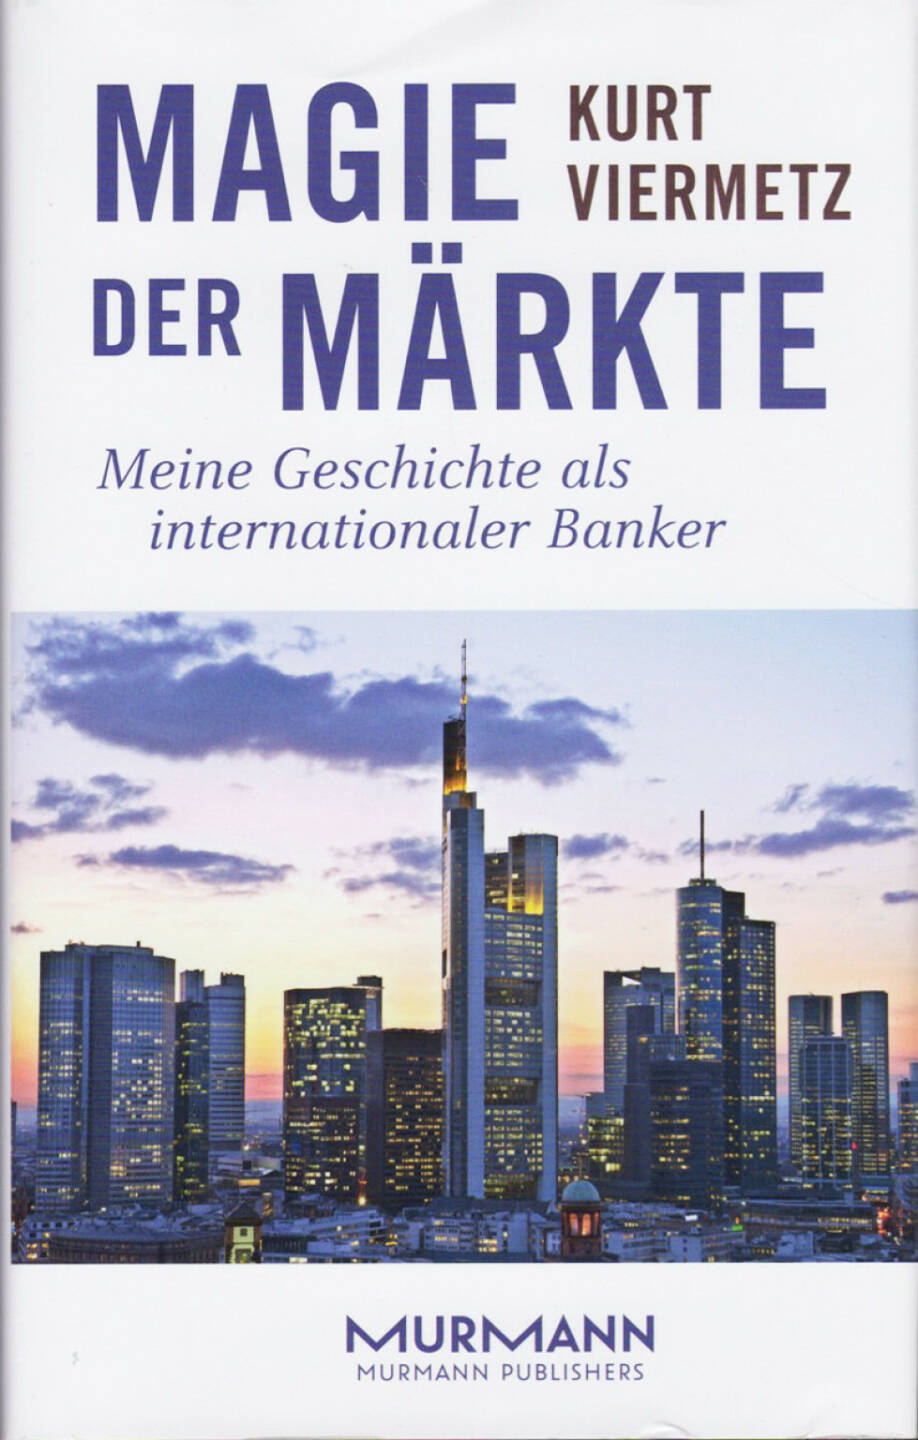 Kurt F. Viermetz - Magie der Märkte. Meine Geschichte als internationaler Banker - http://boerse-social.com/financebooks/show/kurt_f_viermetz_-_magie_der_markte_meine_geschichte_als_internationaler_banker